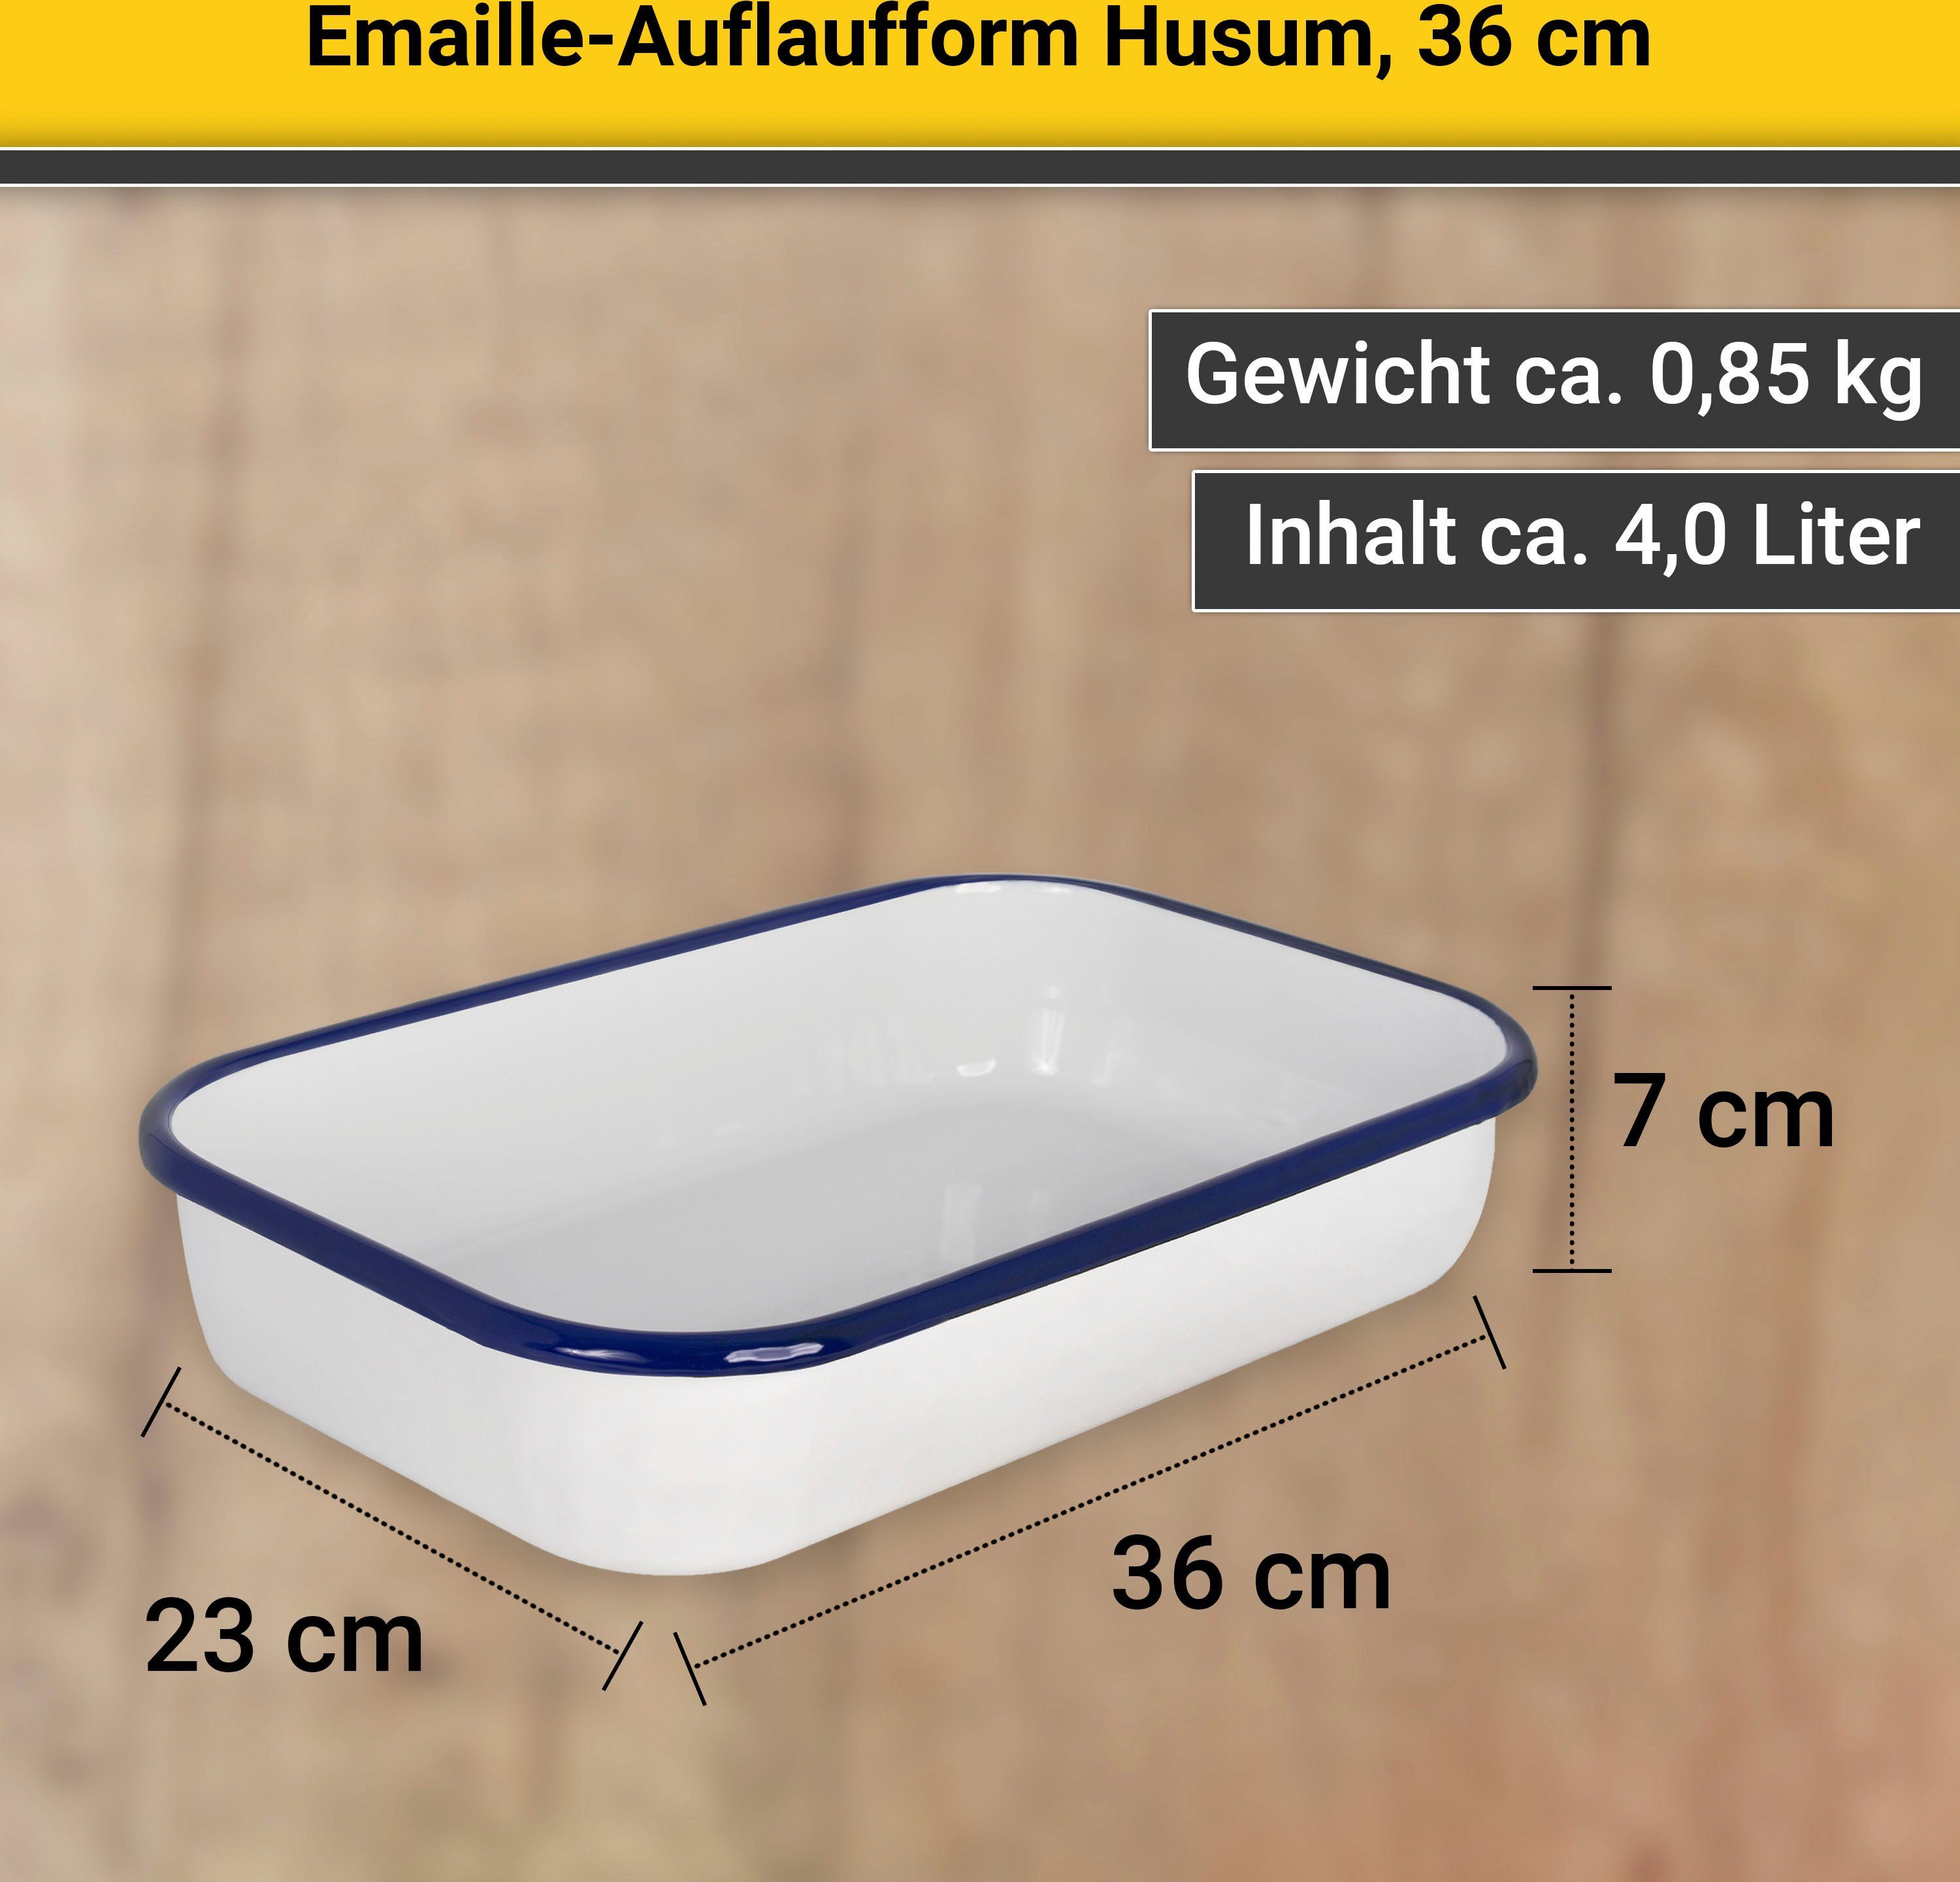 cm Krüger 36 Auflaufform Emaille, Husum,